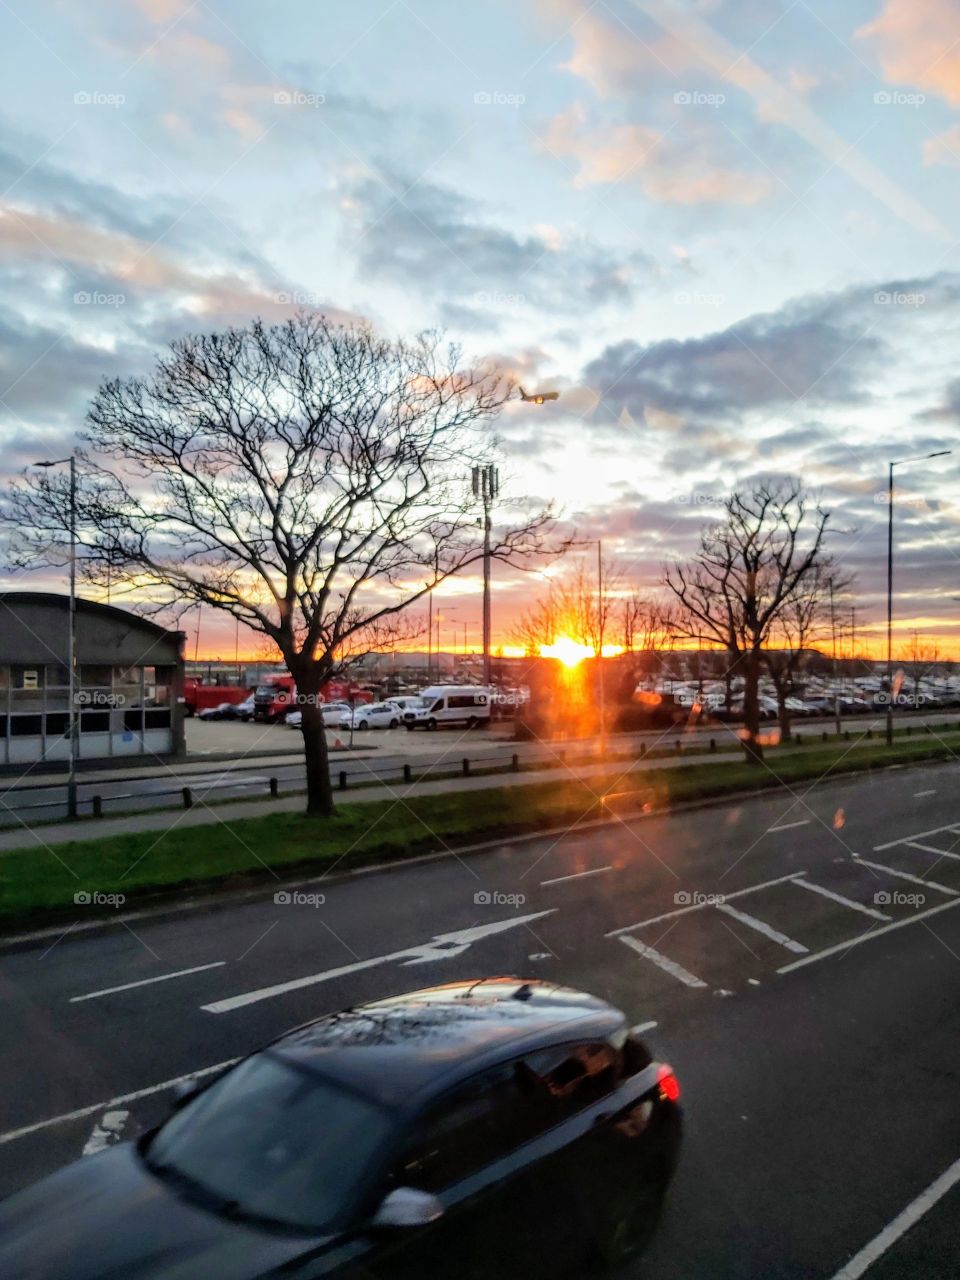 Sunset by Heathrow